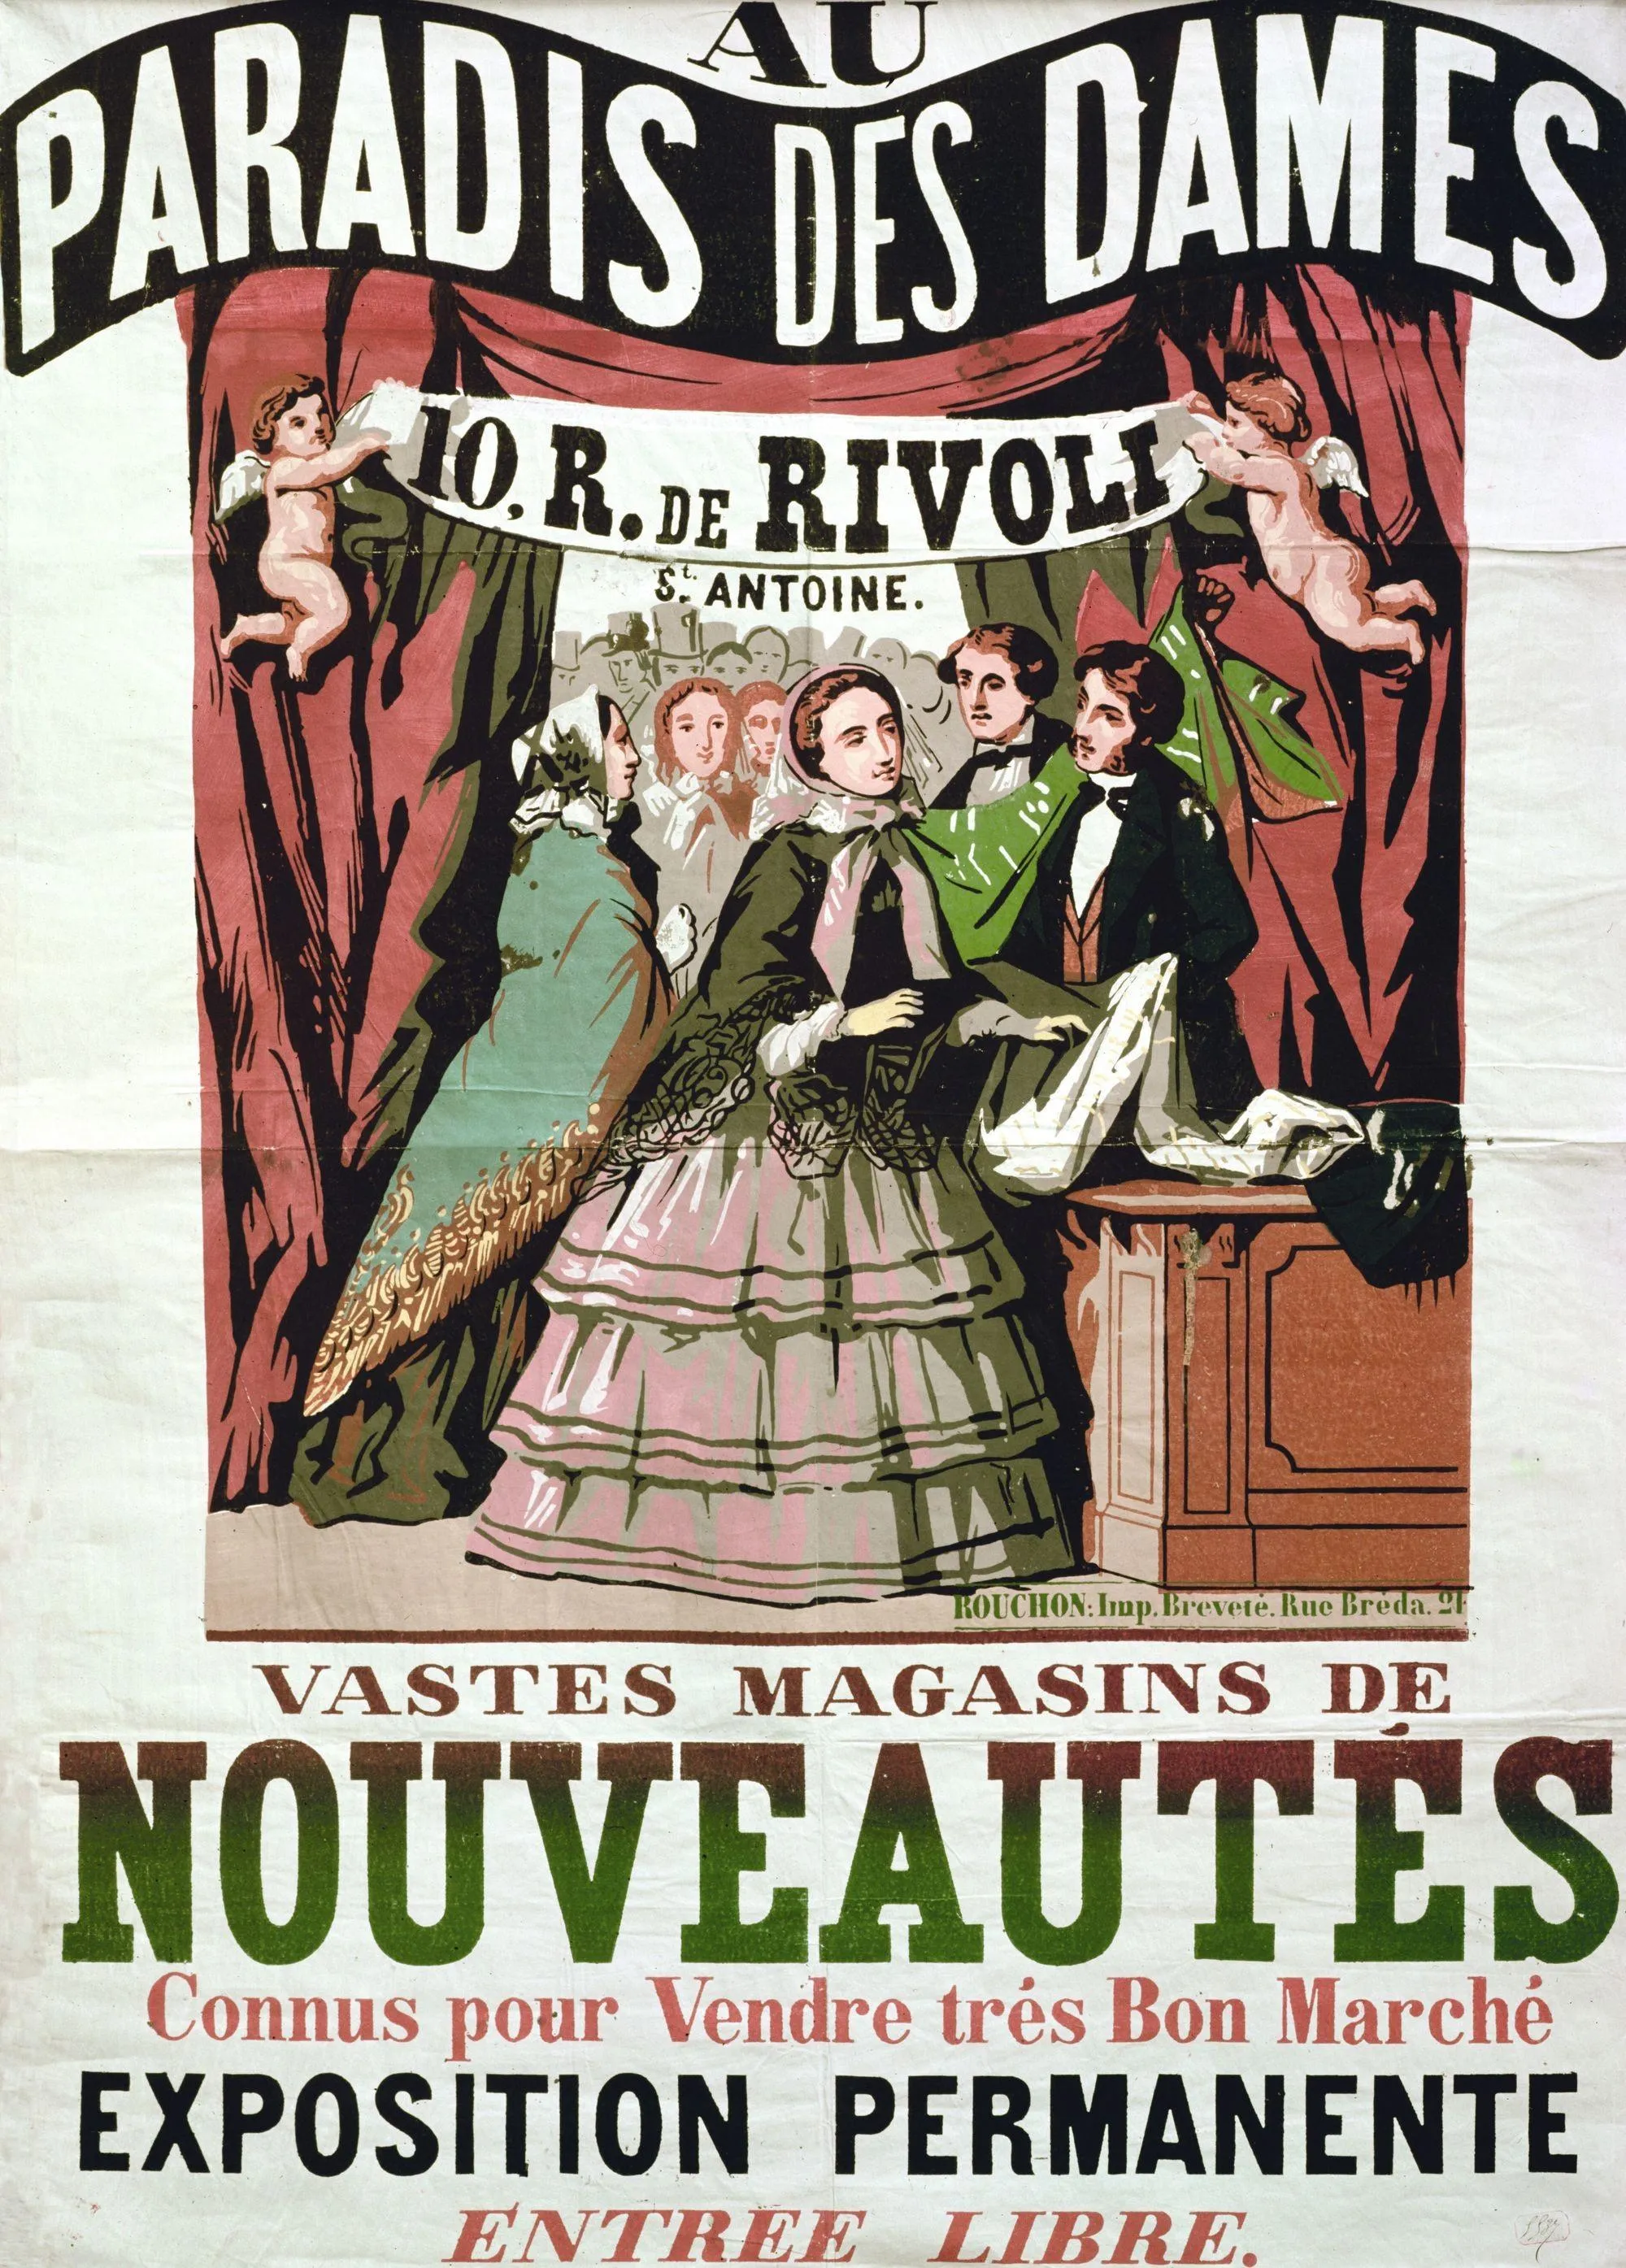 Anonyme, affiche publicitaire, 1856, gravure sur bois en couleur, imprimée chez Jean-Alexis Rouchon, 140 x 100 cm, BnF, Paris.